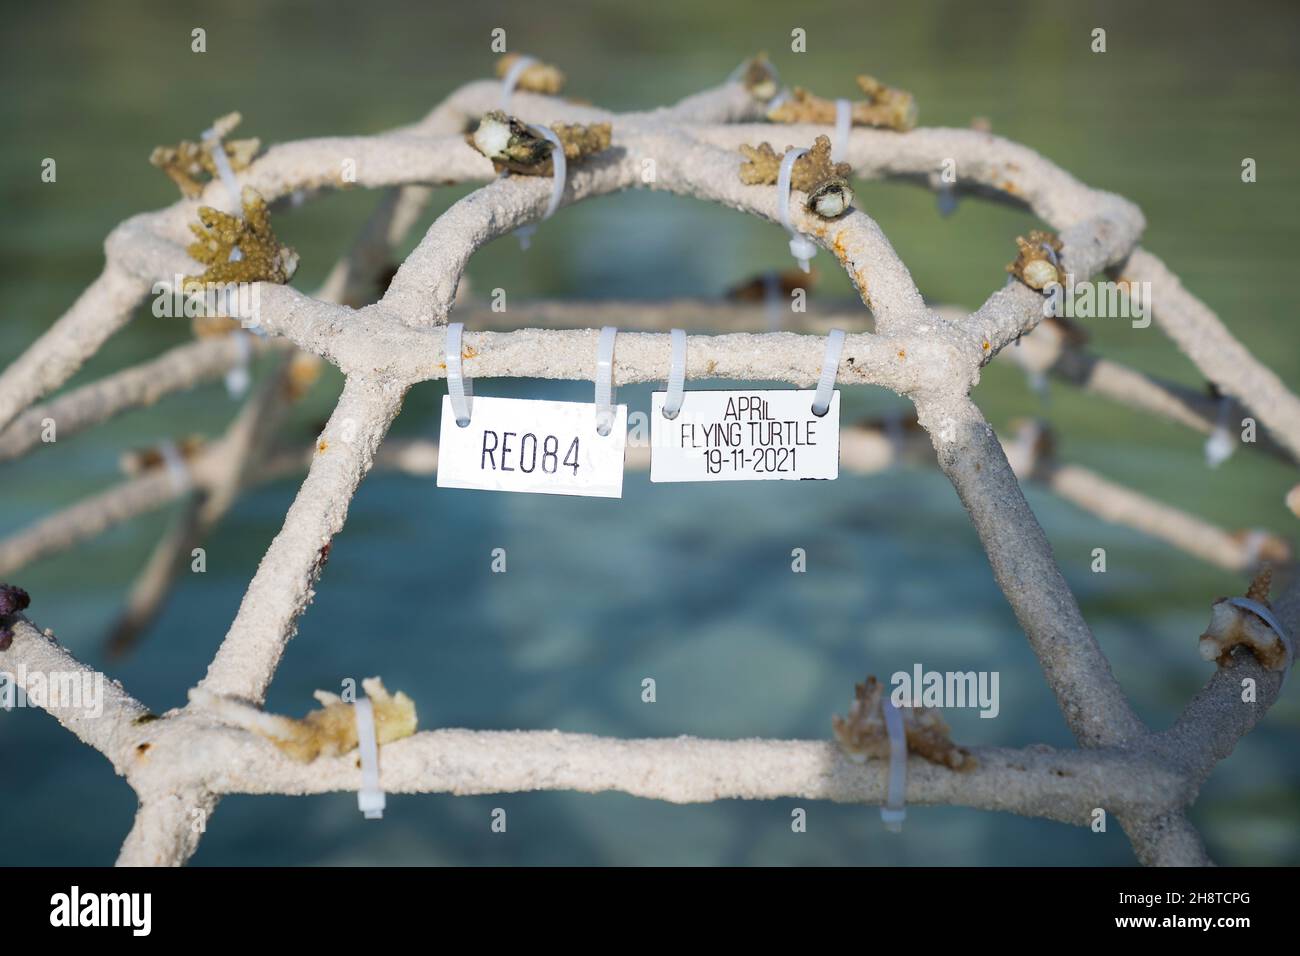 Ein Korallenrahmen, der die Wiederherstellung von Korallenriffen unterstützen soll, wird im Meer platziert, um die Reise von April, einer Olive ridley Meeresschildkröte, zu ihrem neuen Zuhause in Großbritannien, im Four Seasons Resort in Kuda Huraa, Malediven, zu feiern. Bilddatum: 18. November 2021. Siehe PA Geschichte UMWELT Turtle Maldives. April, die in ihr neues Zuhause am Sea Life Loch Lomond verlegt wurde, wurde auf der Meeresoberfläche im Raa Atoll auf den Malediven schwebend in einem ausrangierten Fischernetz mit fehlendem rechten vorderen Flipper und einem Plastikbeutel um den Hals gefunden. Sie kann aufgrund von Problemen mit dem Auftrieb nicht tauchen und kehrt zum Th zurück Stockfoto